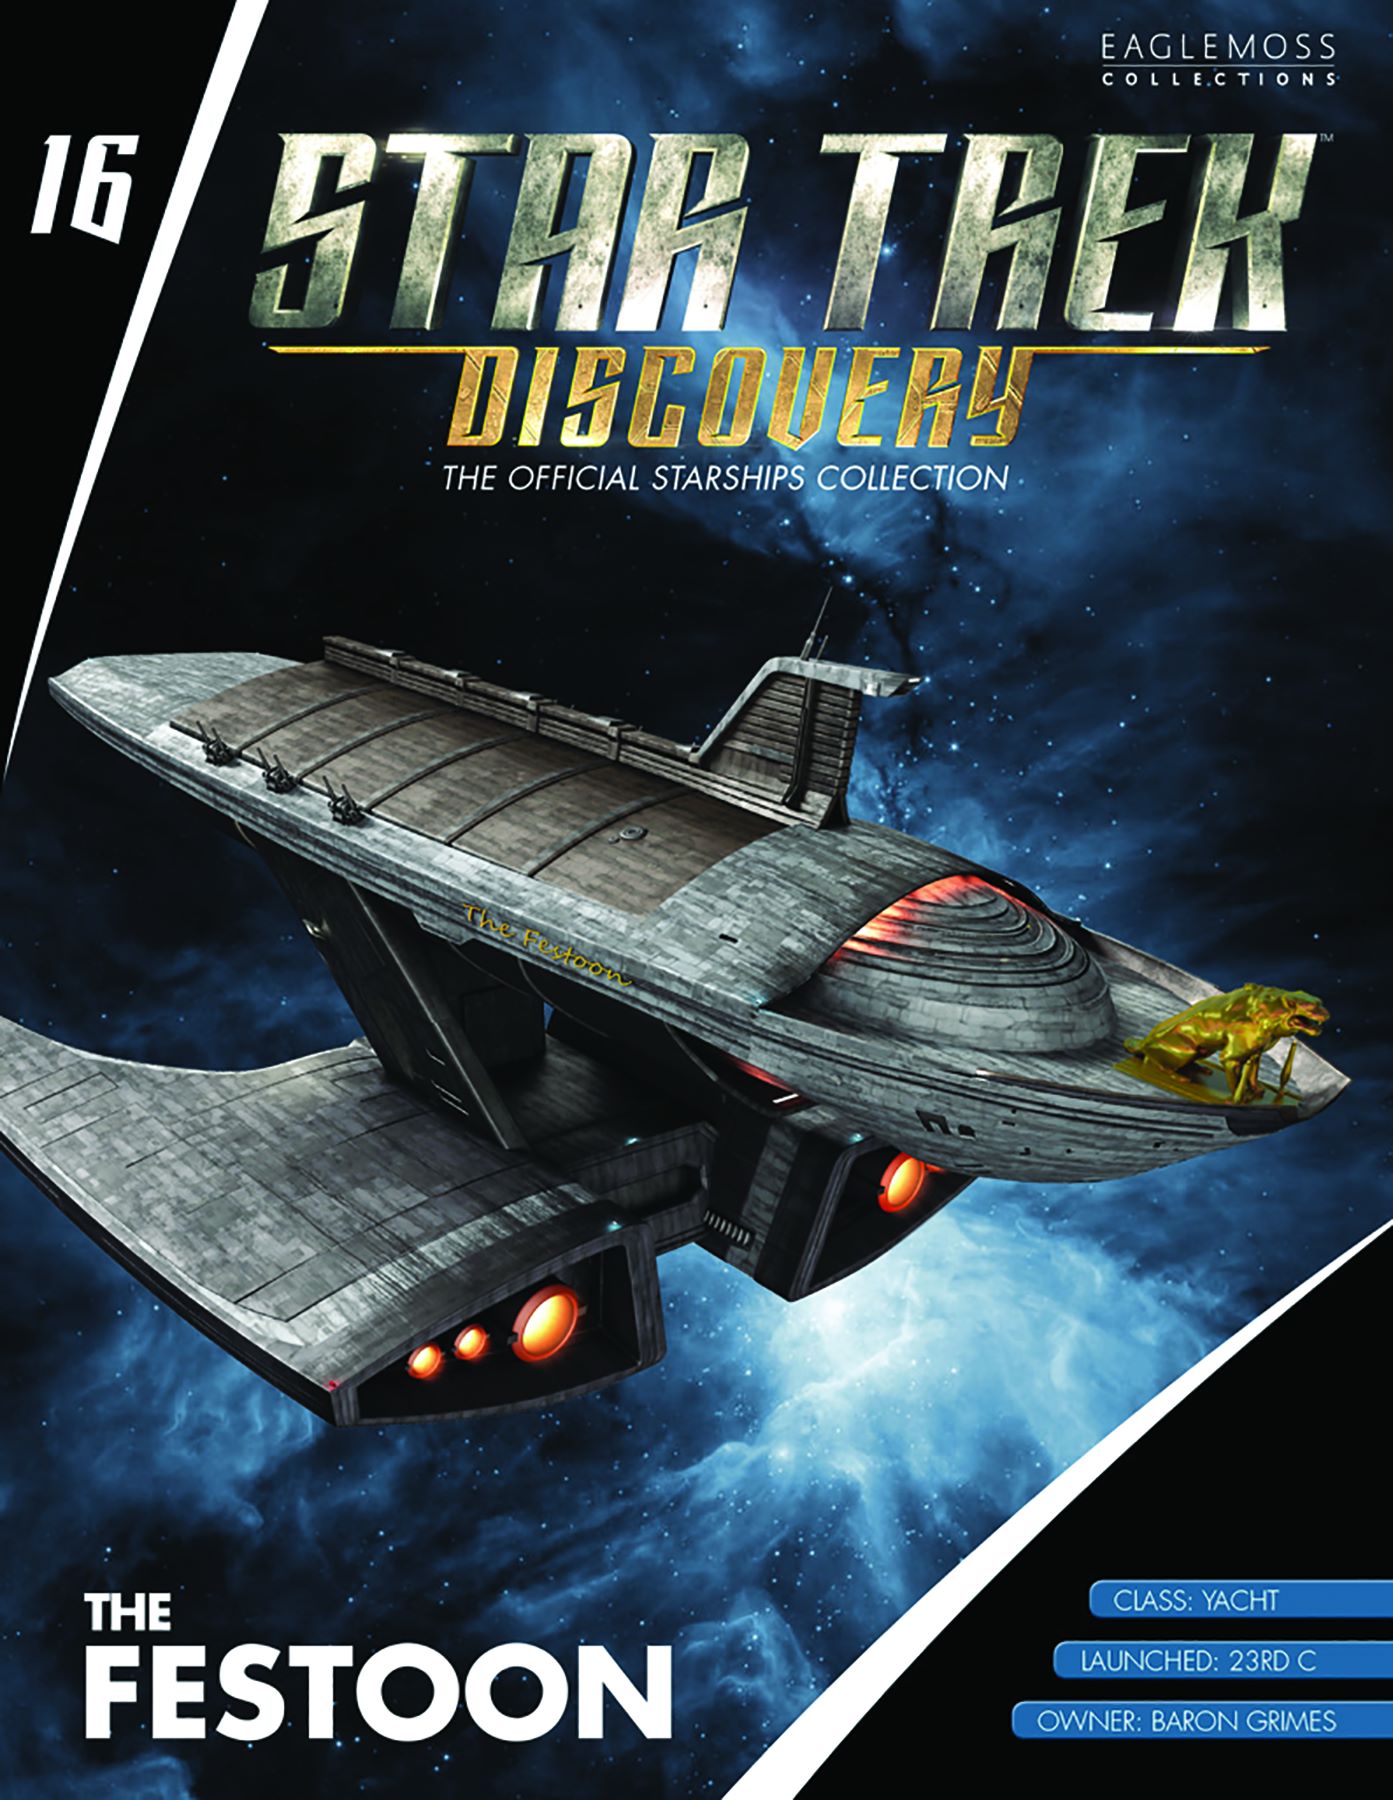 Eaglemoss Star Trek Starships Discovery Issue 16